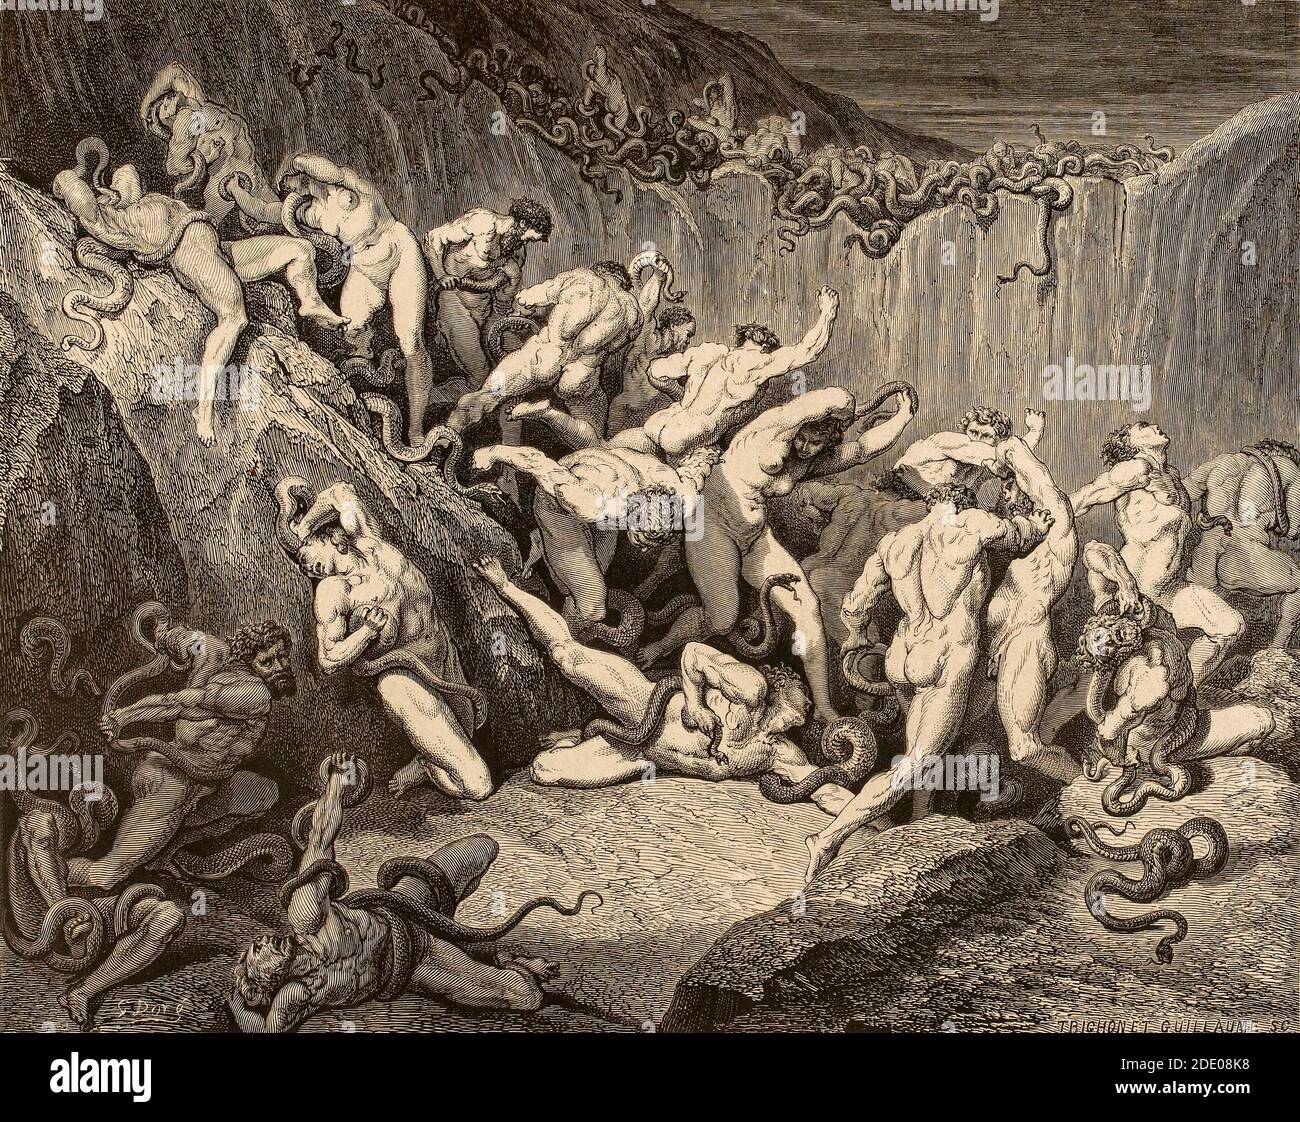 Dante Divina Commedia - Infierno - XXIV Canto - el bedlam de ladrones - VIII Círculo - ilustración de Gustave Doré Foto de stock